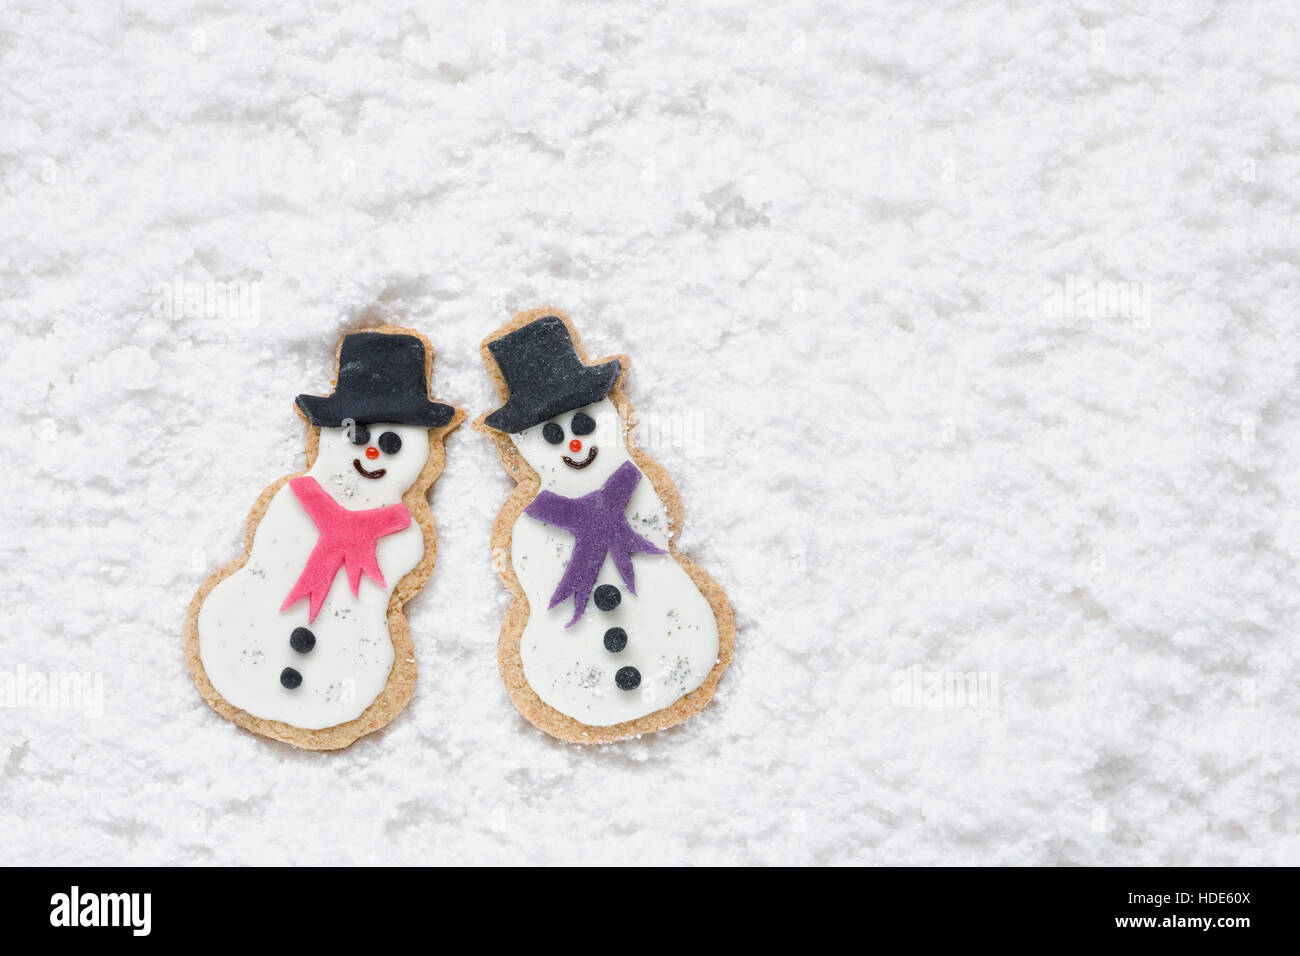 Zwei hausgemachte Schneemänner Kekse auf einem verschneiten Hintergrund. Stockfoto